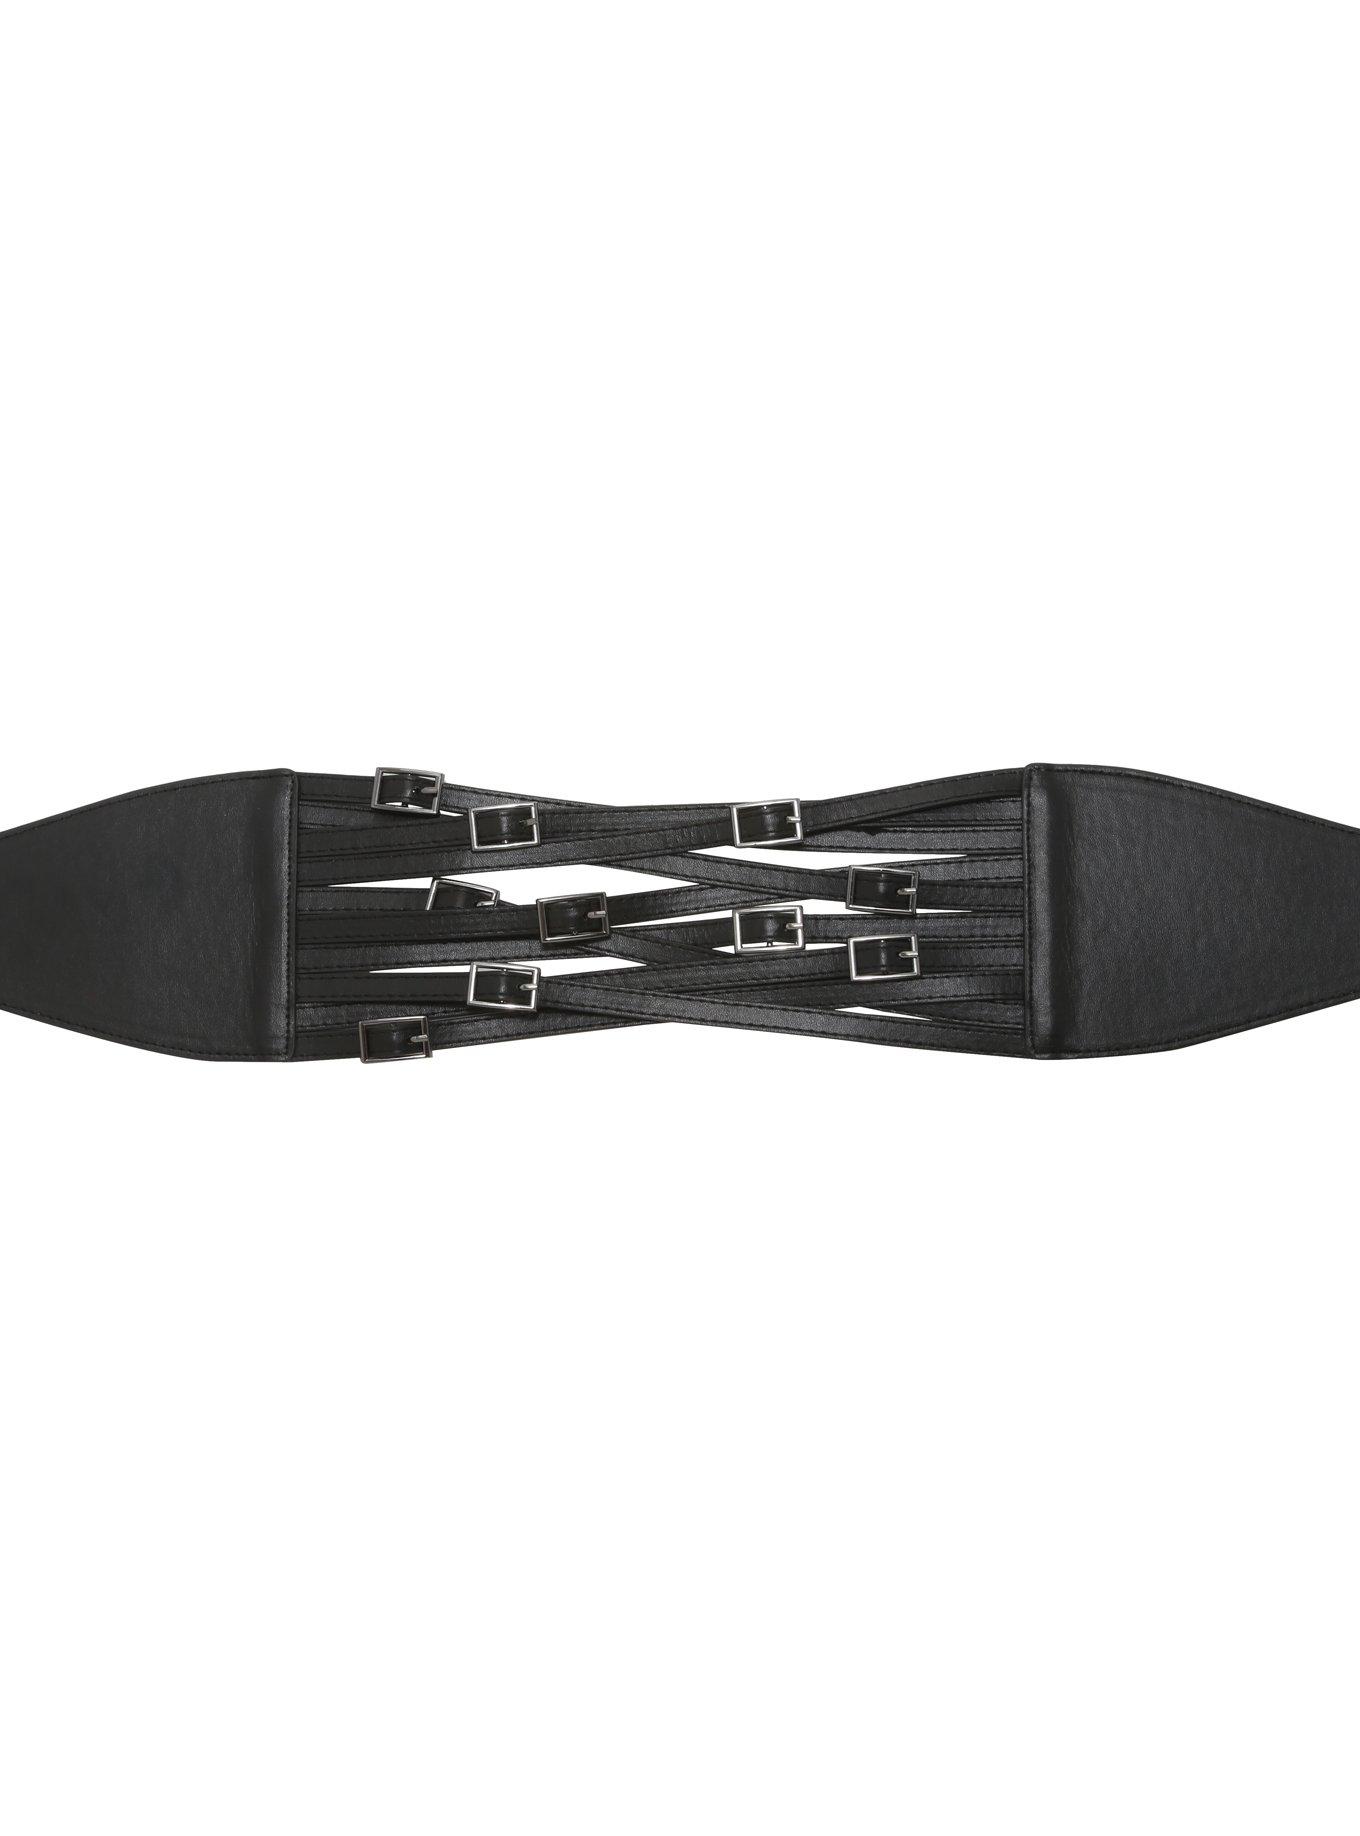 Black Multi-Layer Buckle Belt, BLACK, hi-res